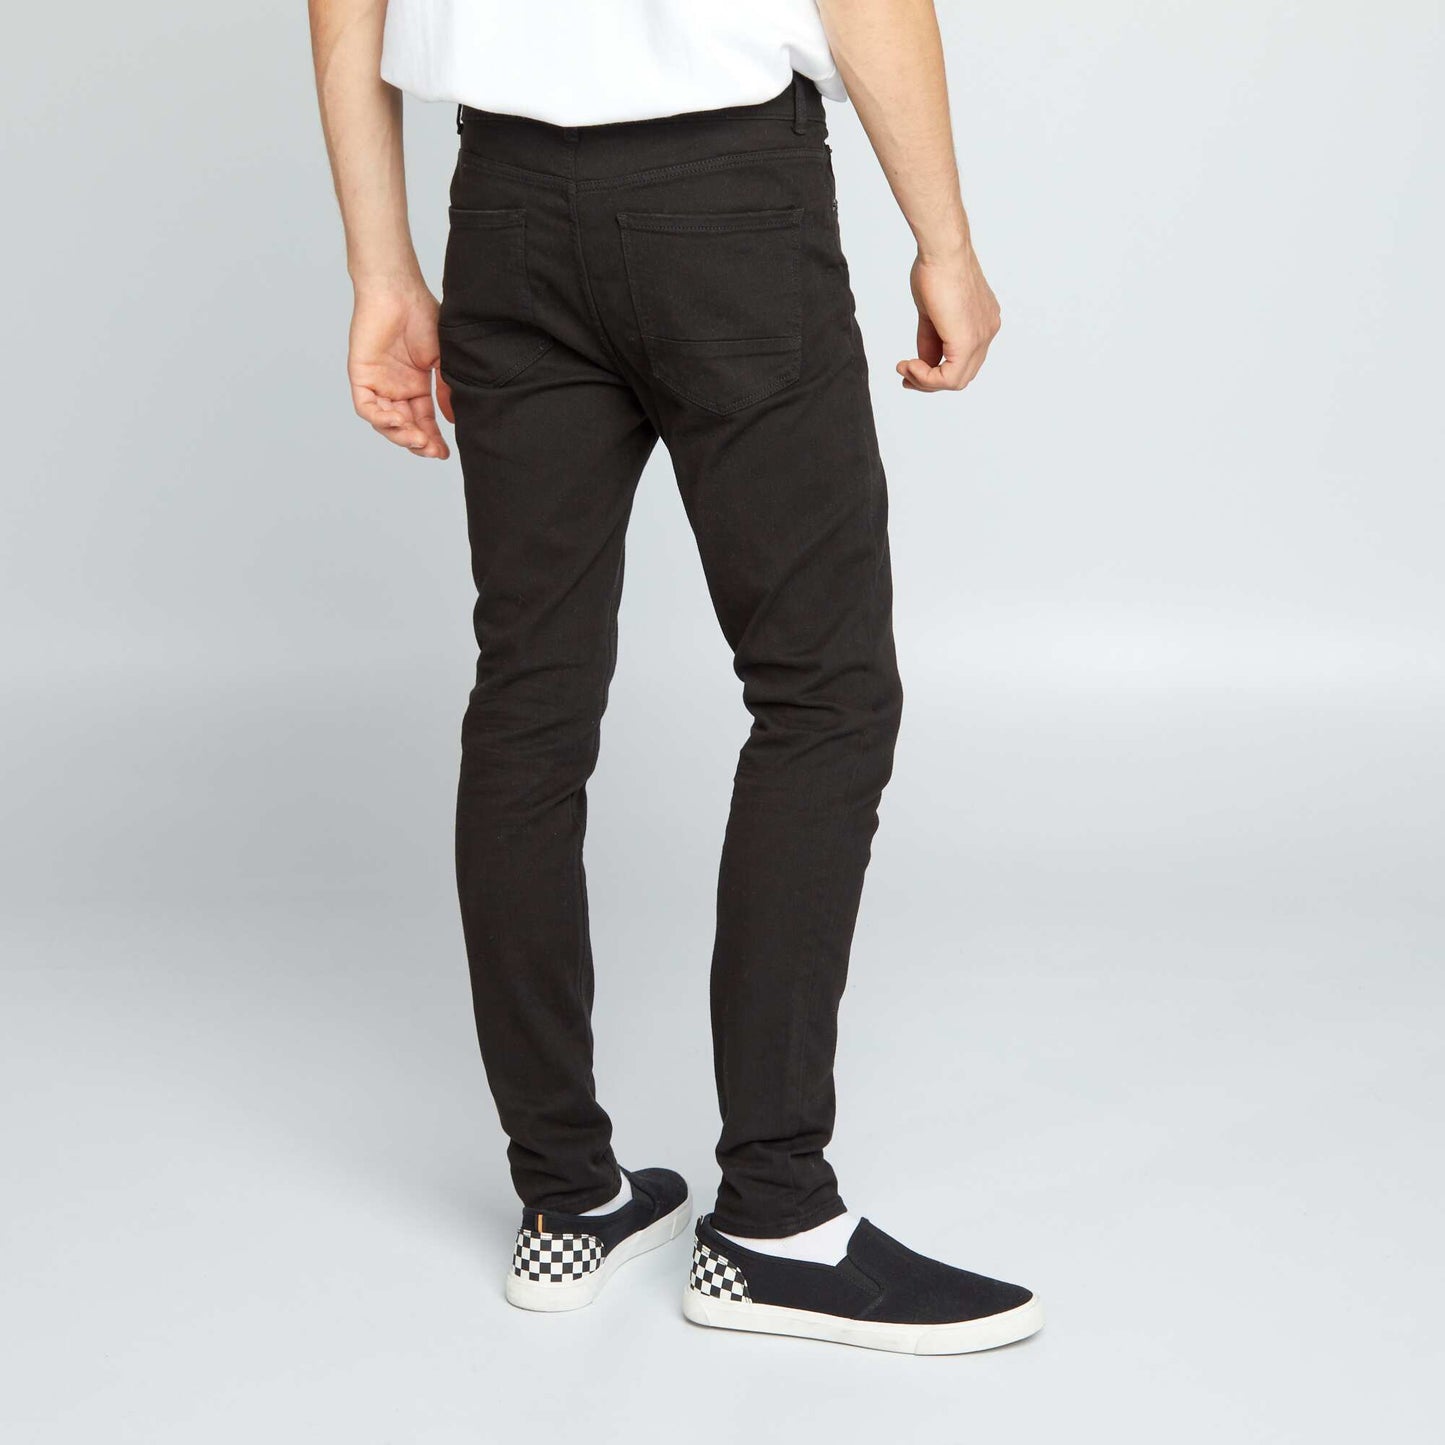 Eco-design skinny jeans Black